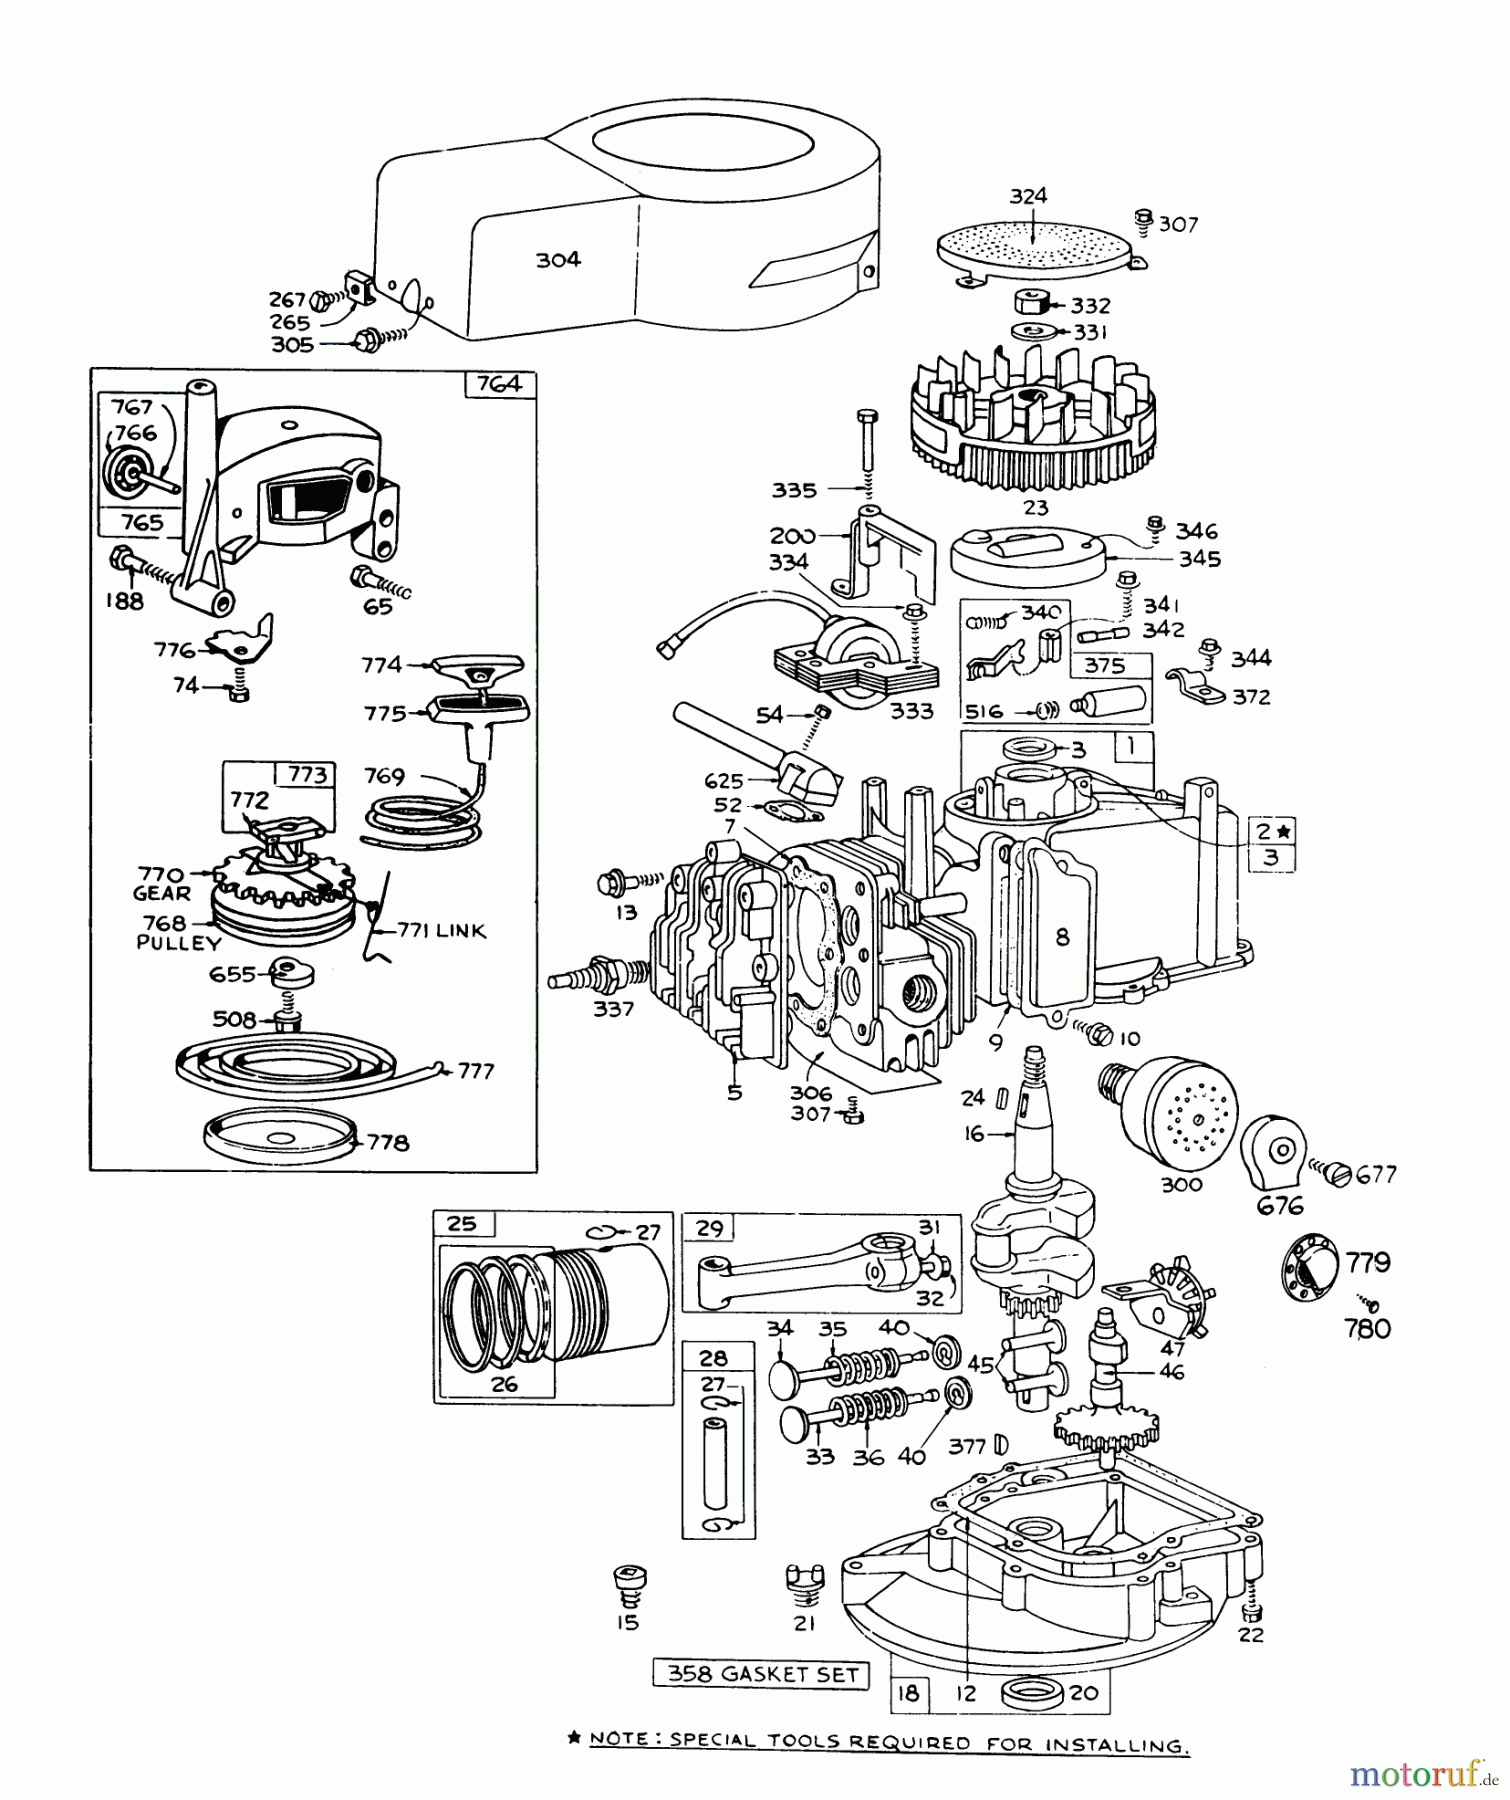  Toro Neu Mowers, Walk-Behind Seite 1 16067 - Toro Whirlwind II Lawnmower, 1978 (8000001-8999999) ENGINE BRIGGS & STRATTON MODEL 92508-0985-01 FOR 19